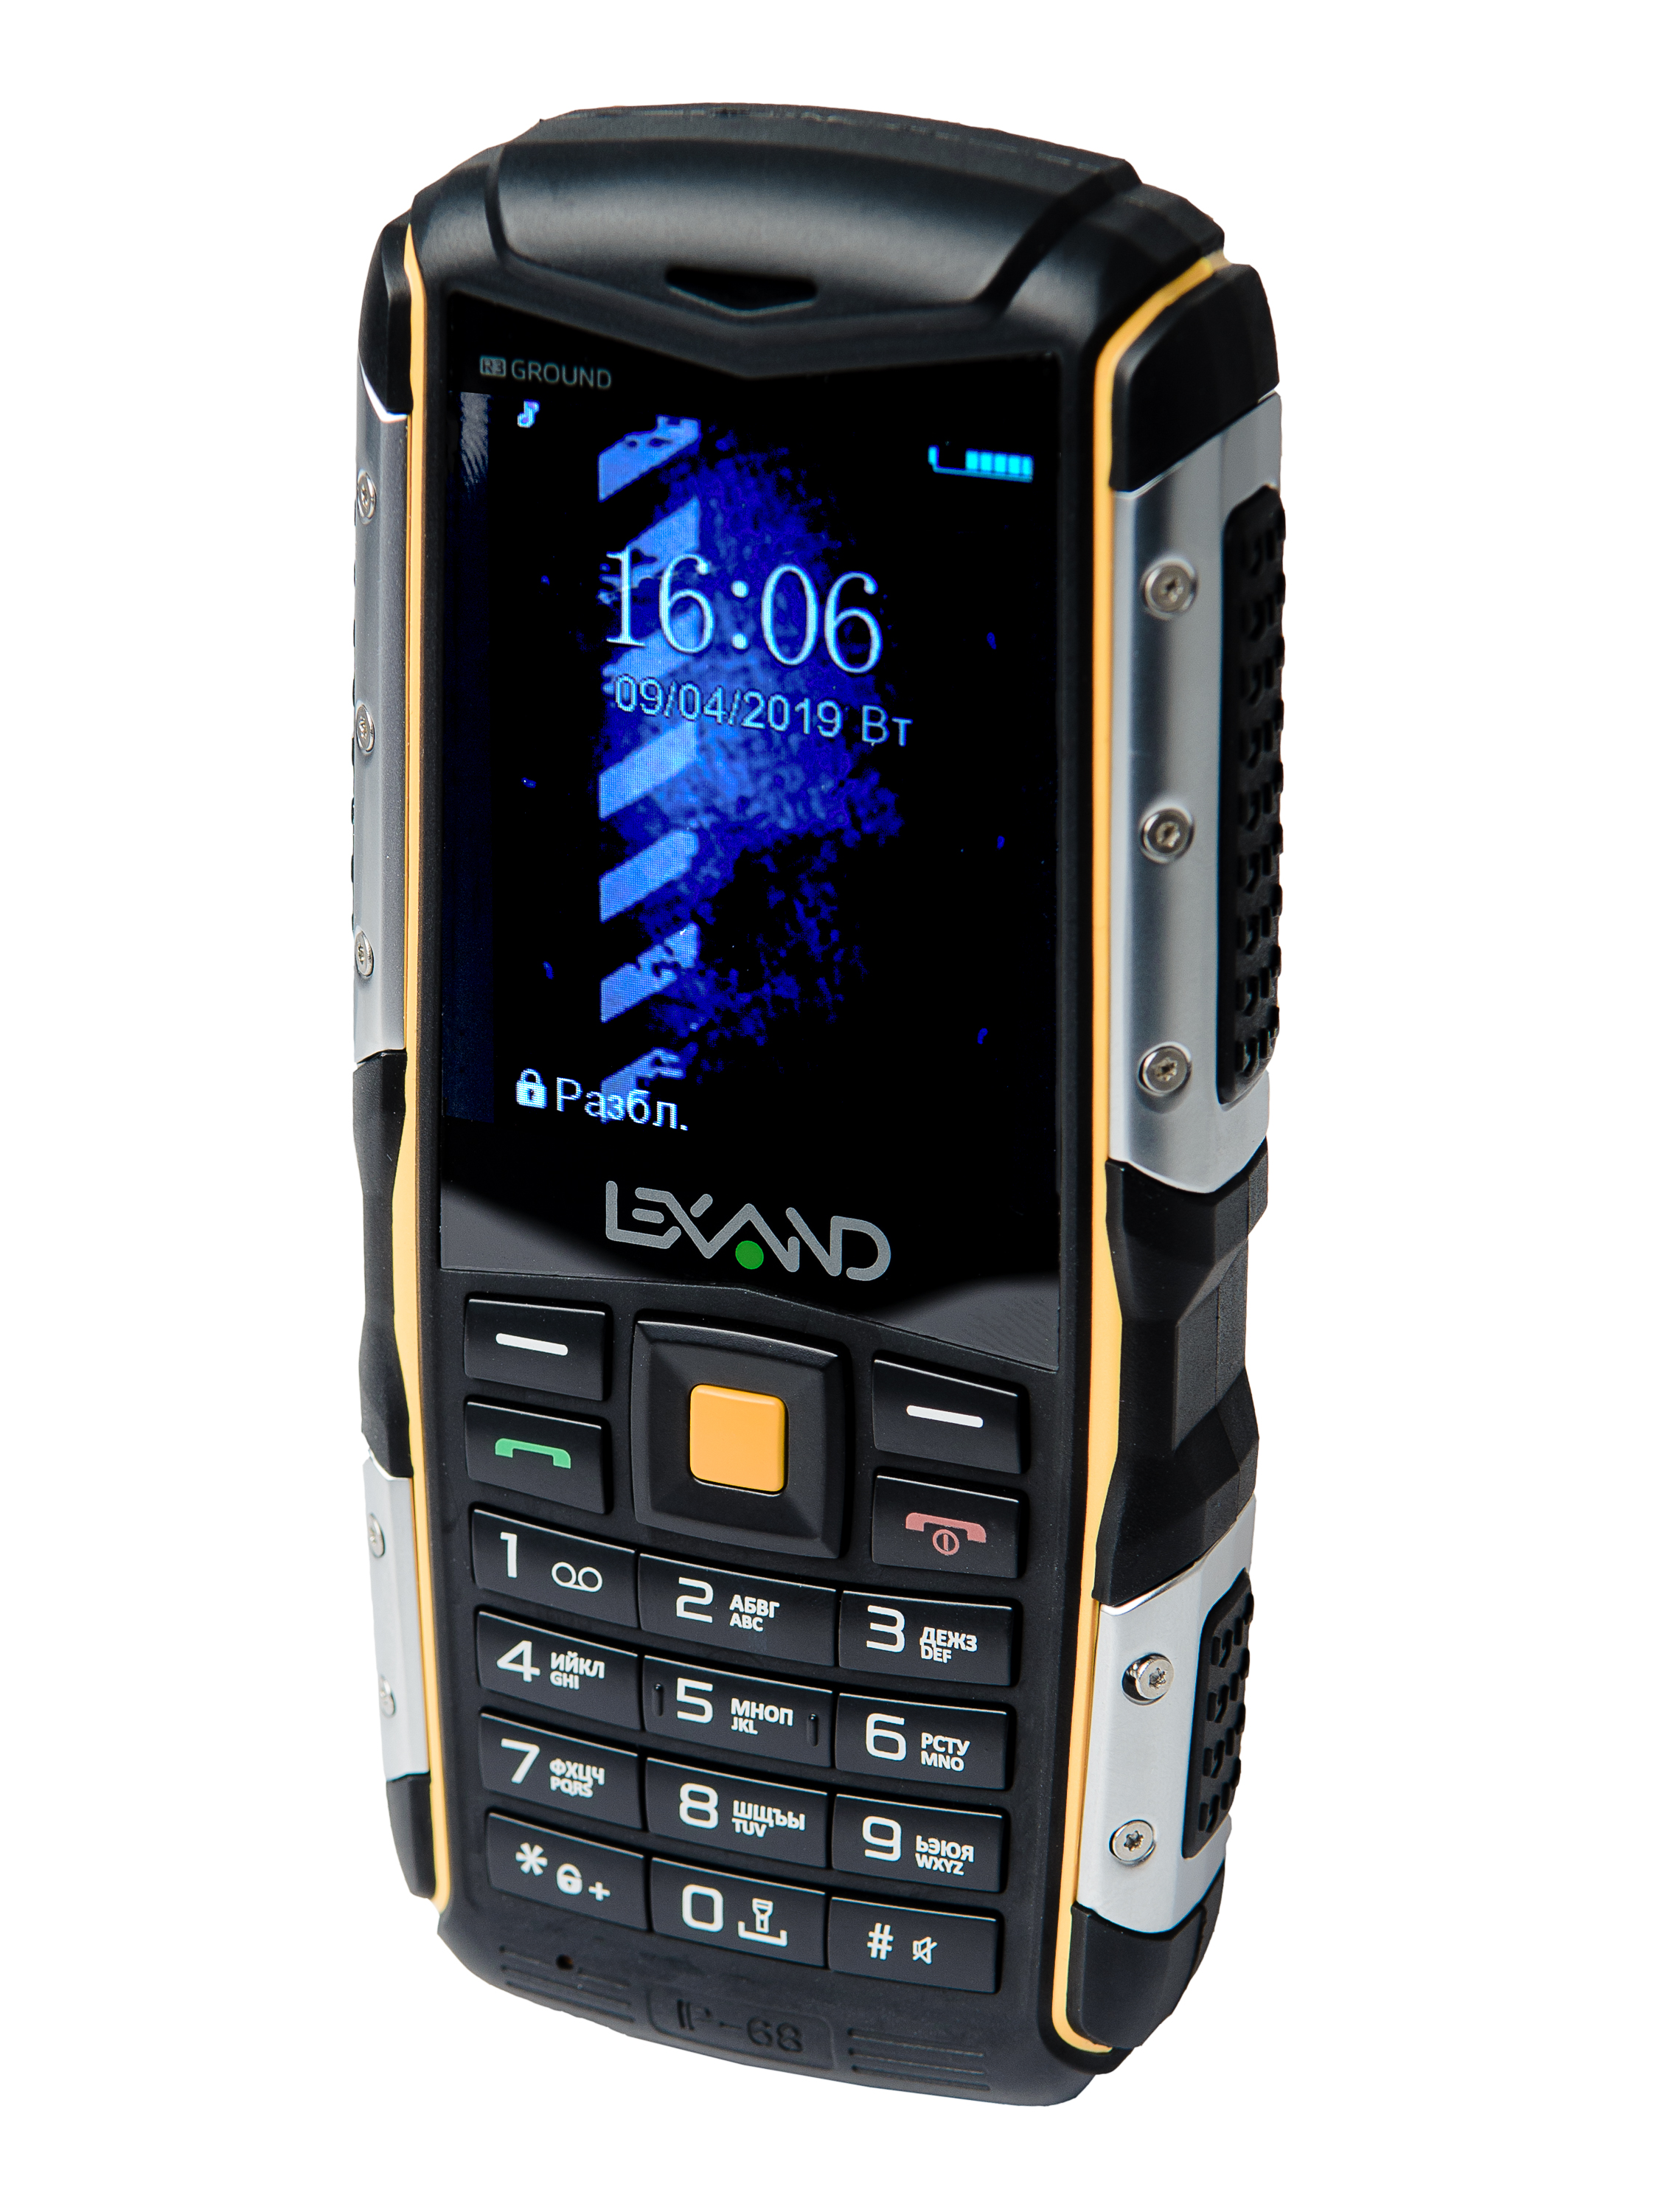 Купить дешевые телефоны в интернете. Lexand r3 ground. Lexand r3 ground аккумулятор. Кнопочный телефон. Сотовый телефон кнопочный.